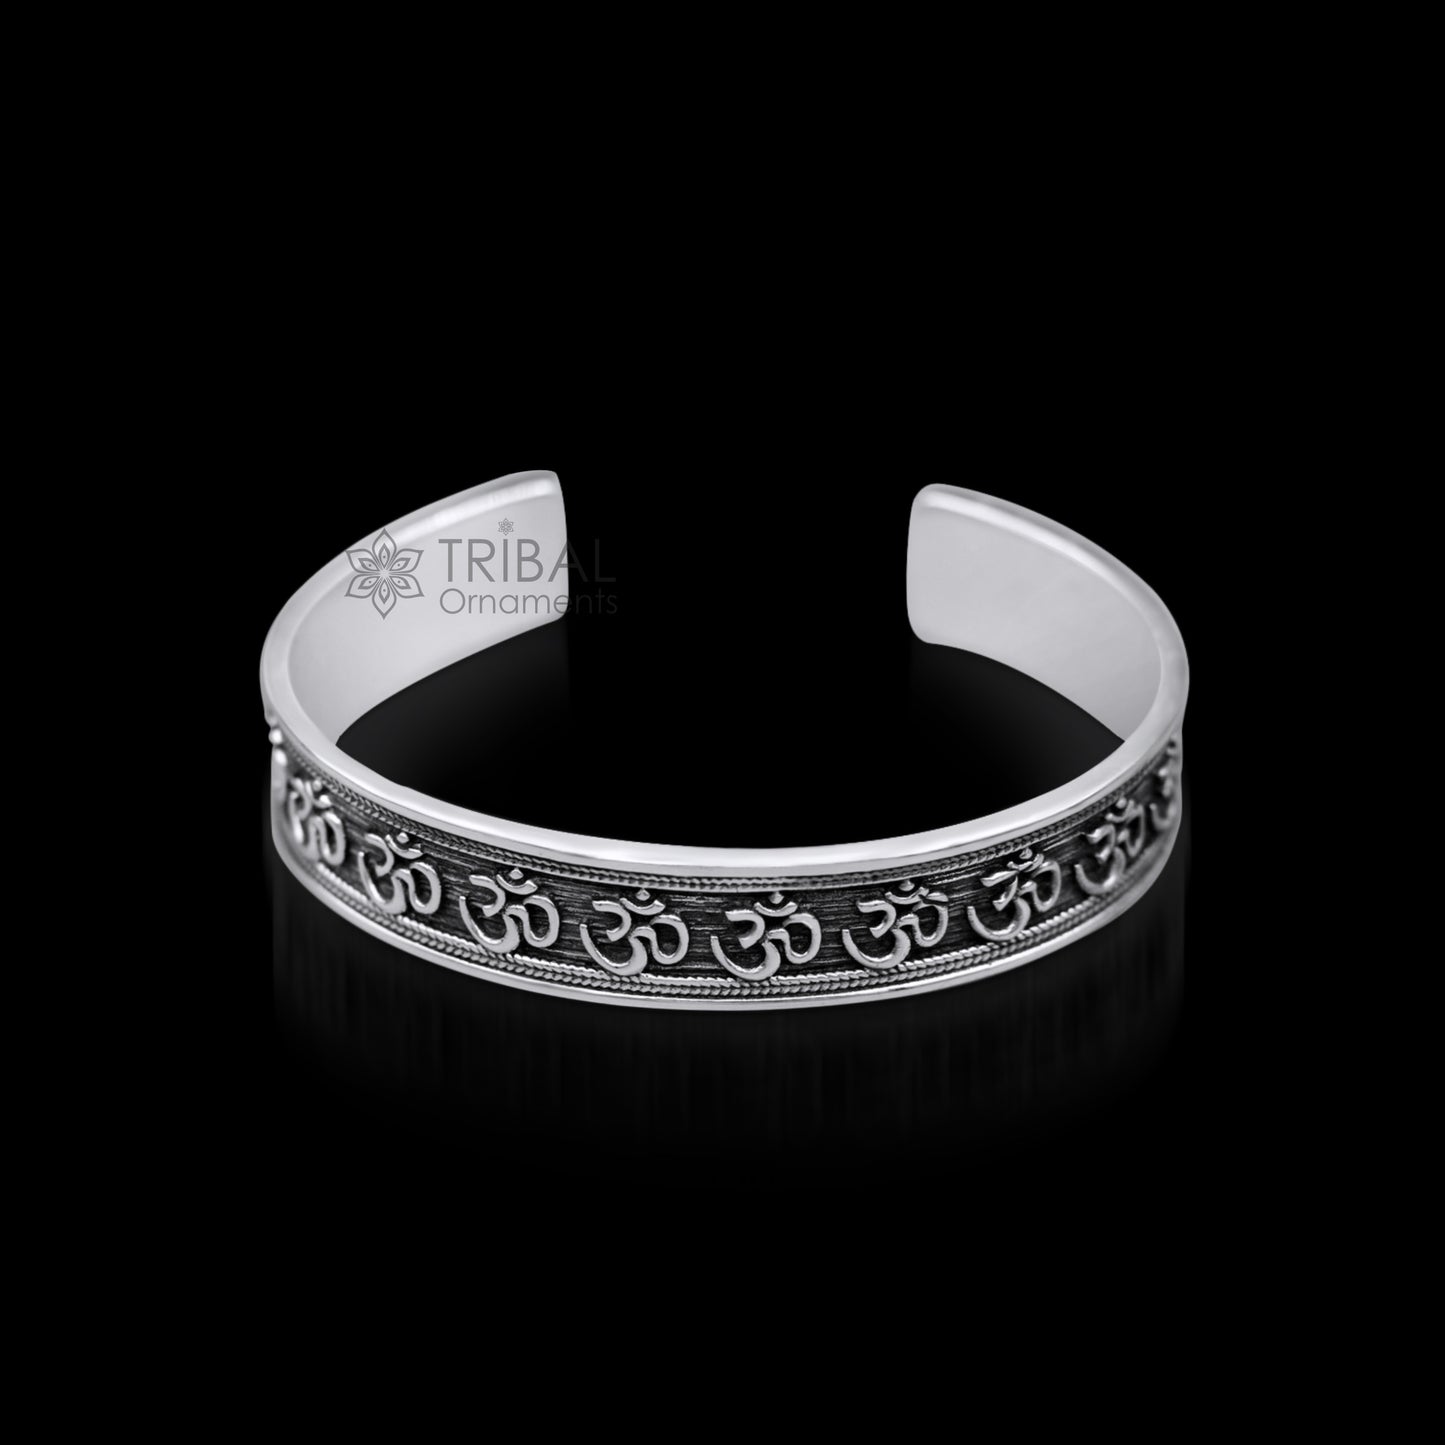 925 sterling Stylish handcrafted silver 'AUM' mantra bangle bracelet adjustable kada unisex ethnic stylish fashionable jewelry india nsk140